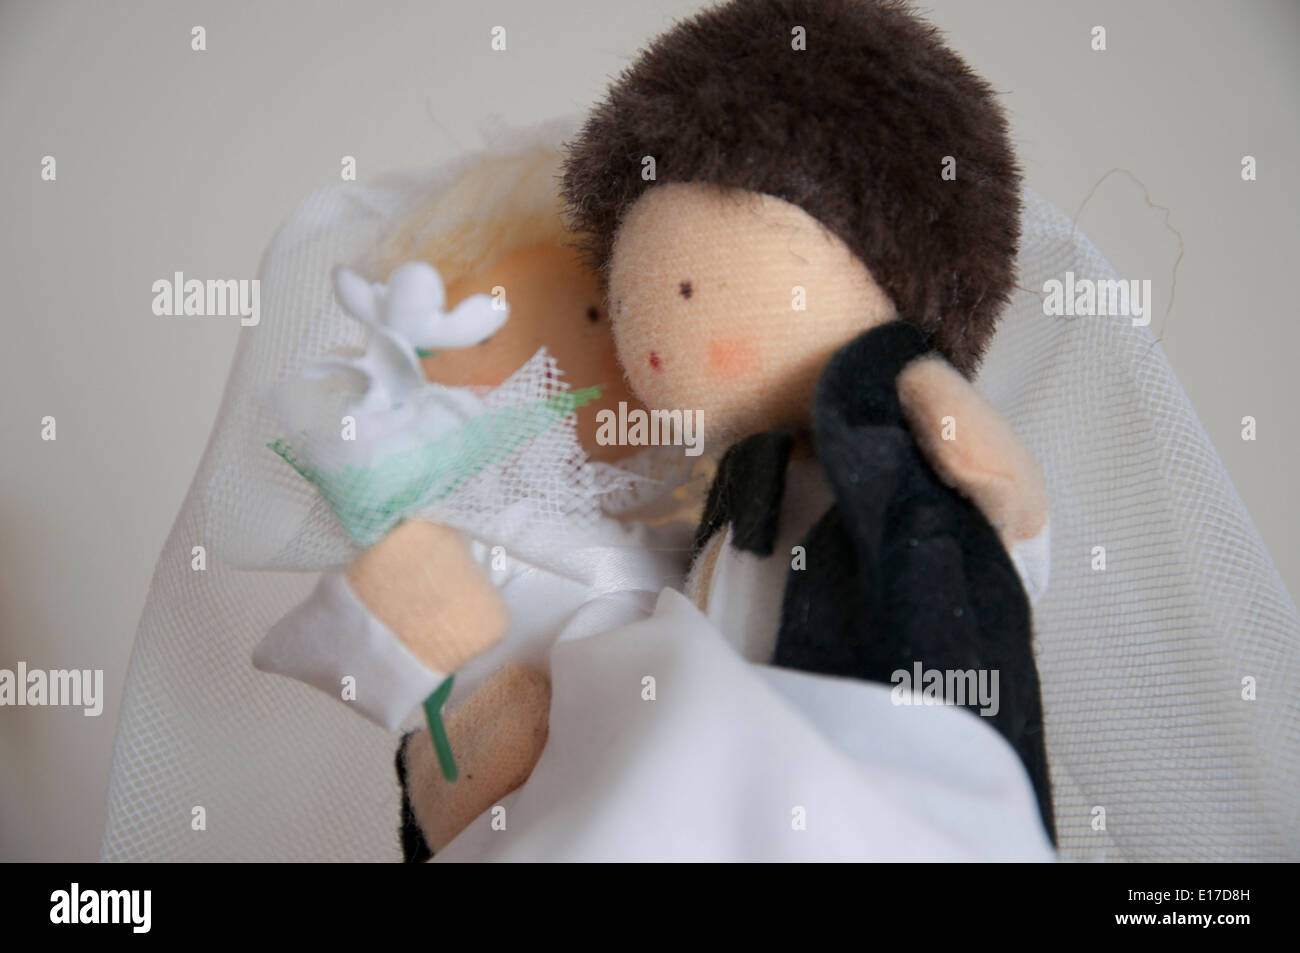 Wedding figure Stock Photo